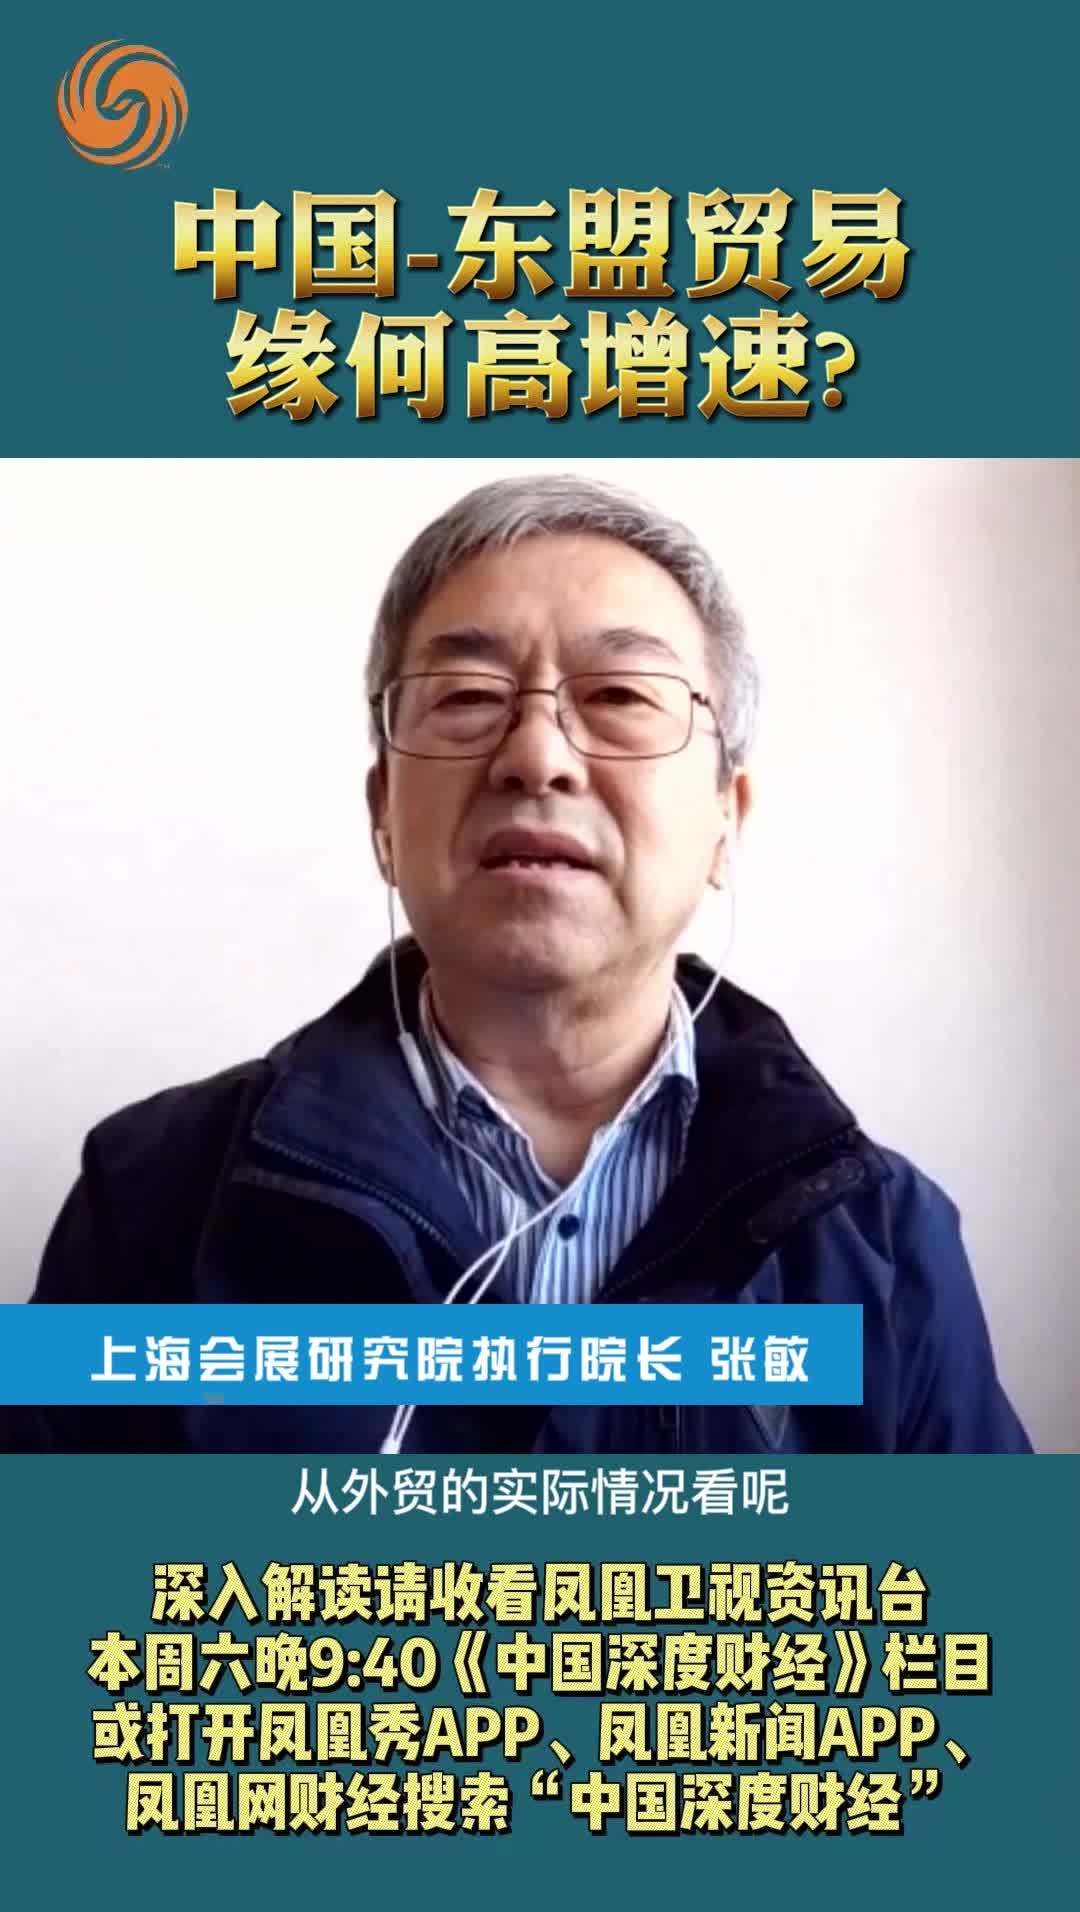 上海会展研究院执行院长张敏：中国-东盟贸易 缘何高增速？